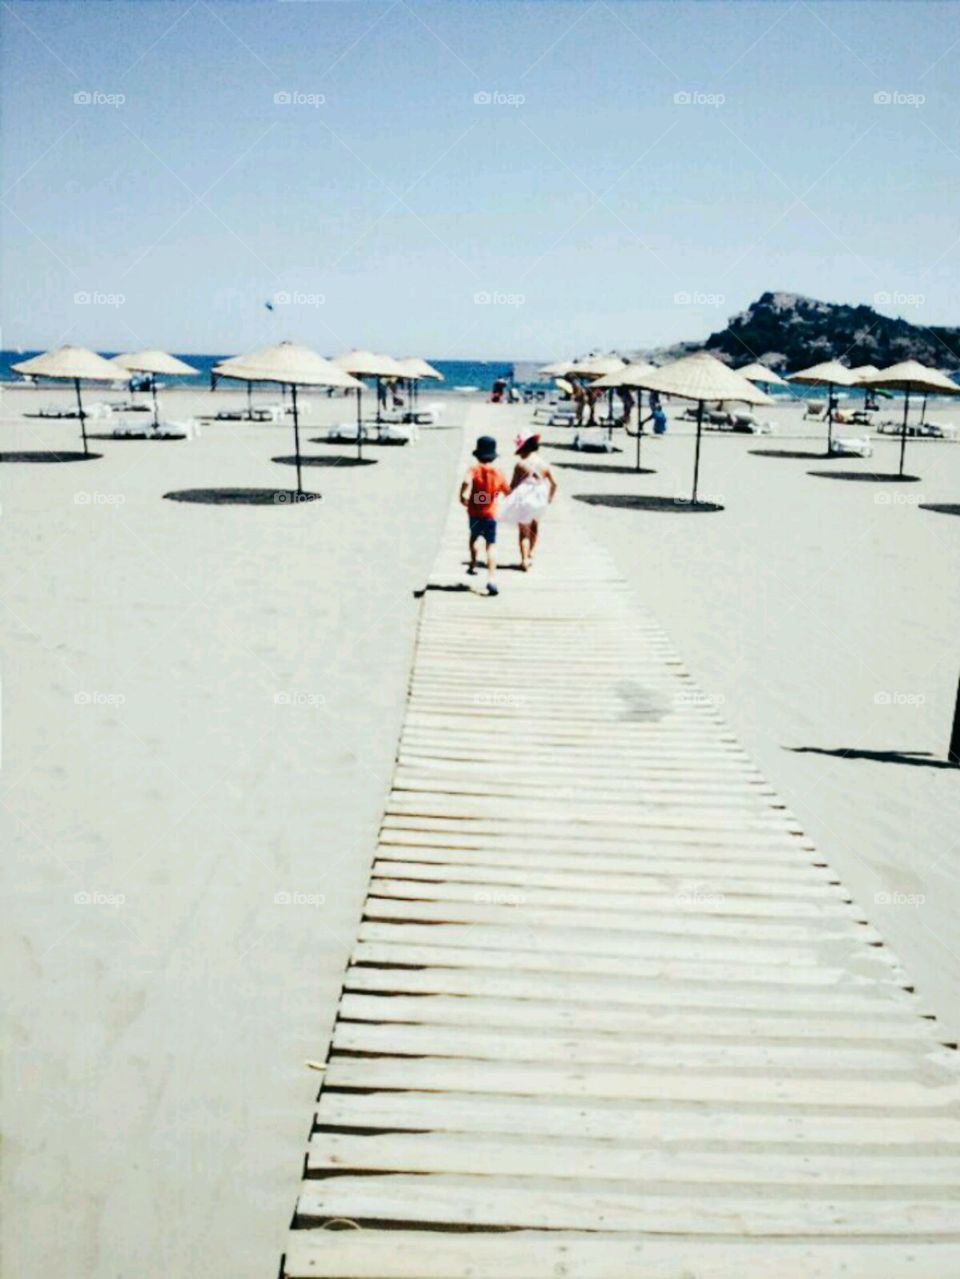 Kids walking on boardwalk at beach